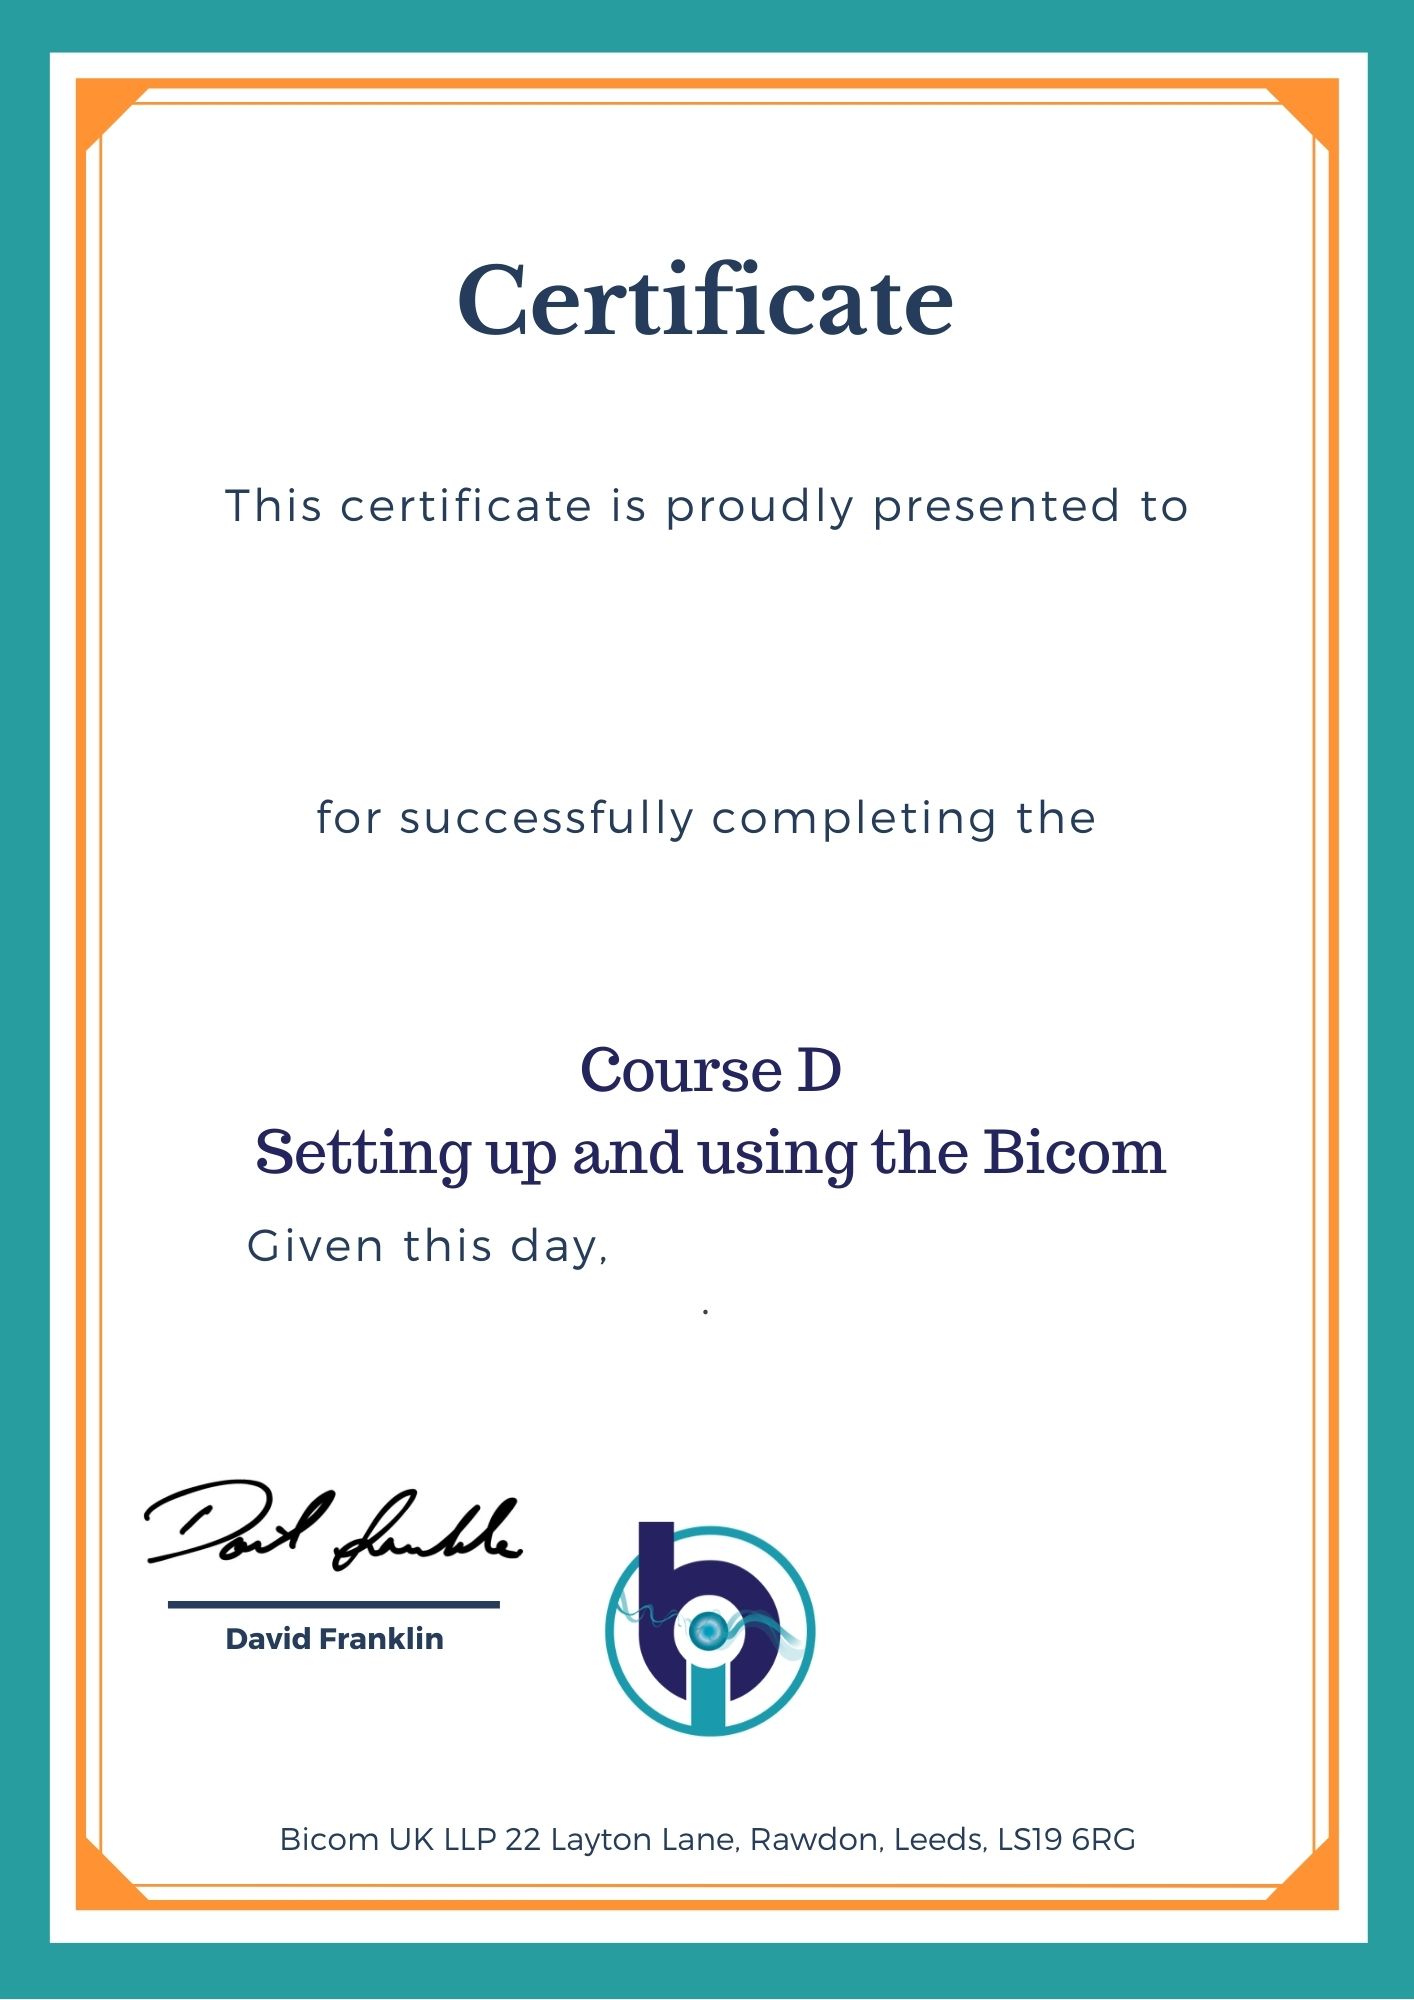 Course D certificate